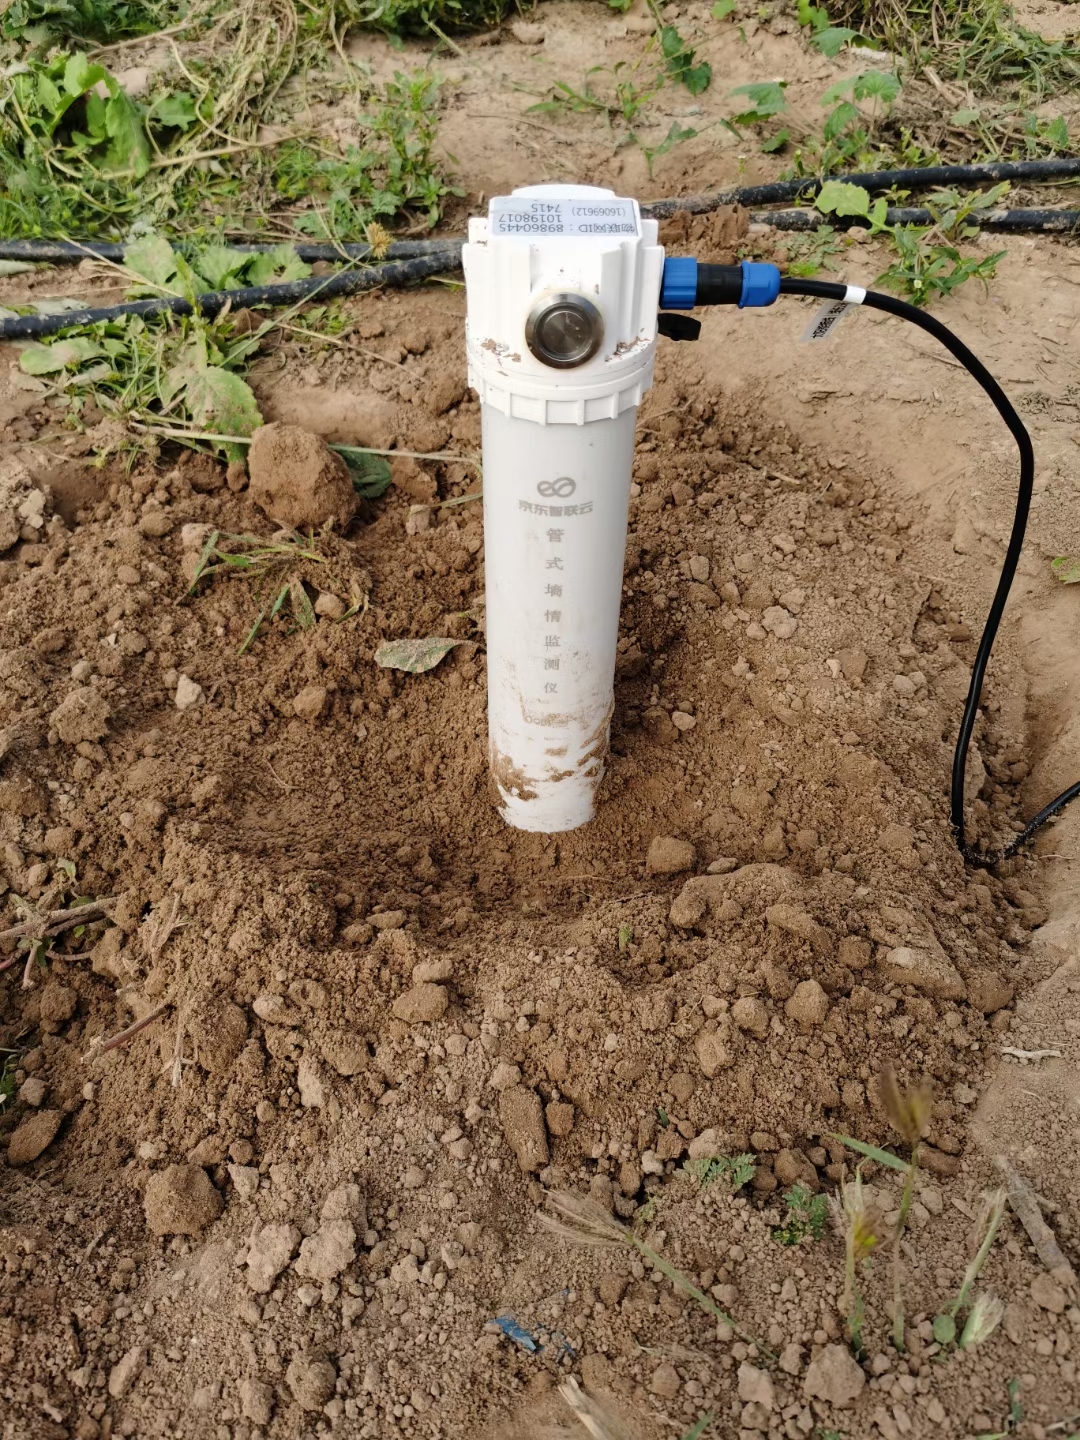 土壤墒情监测设备在果园中的应用